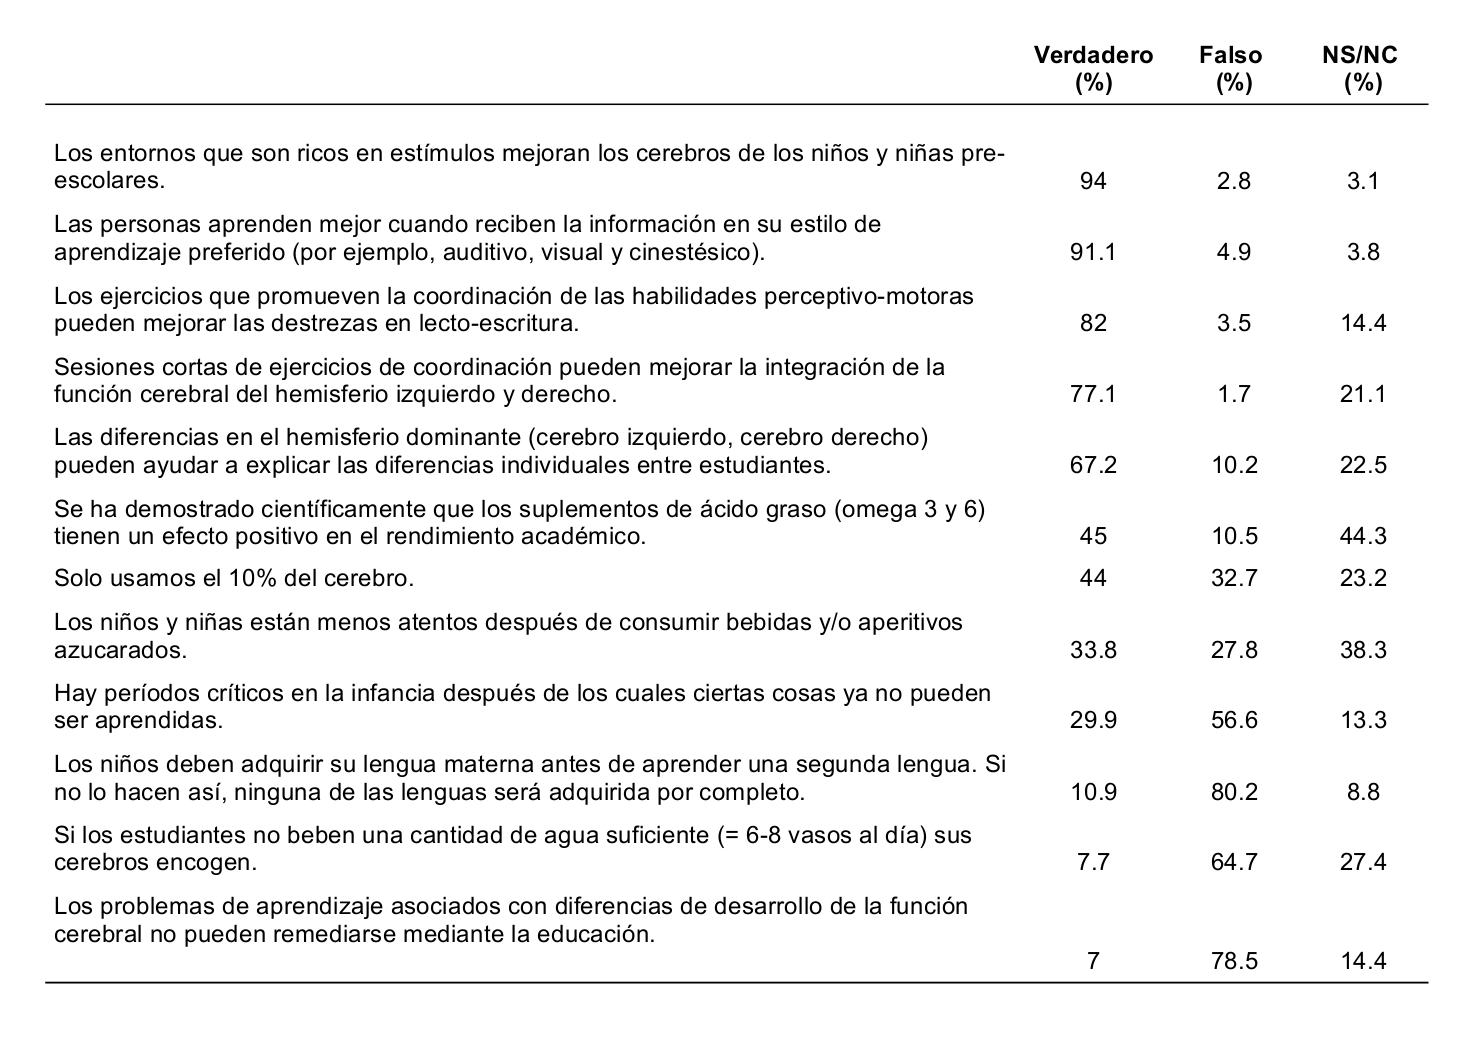 Tabla 1.- Porcentajes de aceptación y rechazo de neuromitos entre el profesorado español (Ferrero y col., 2016).